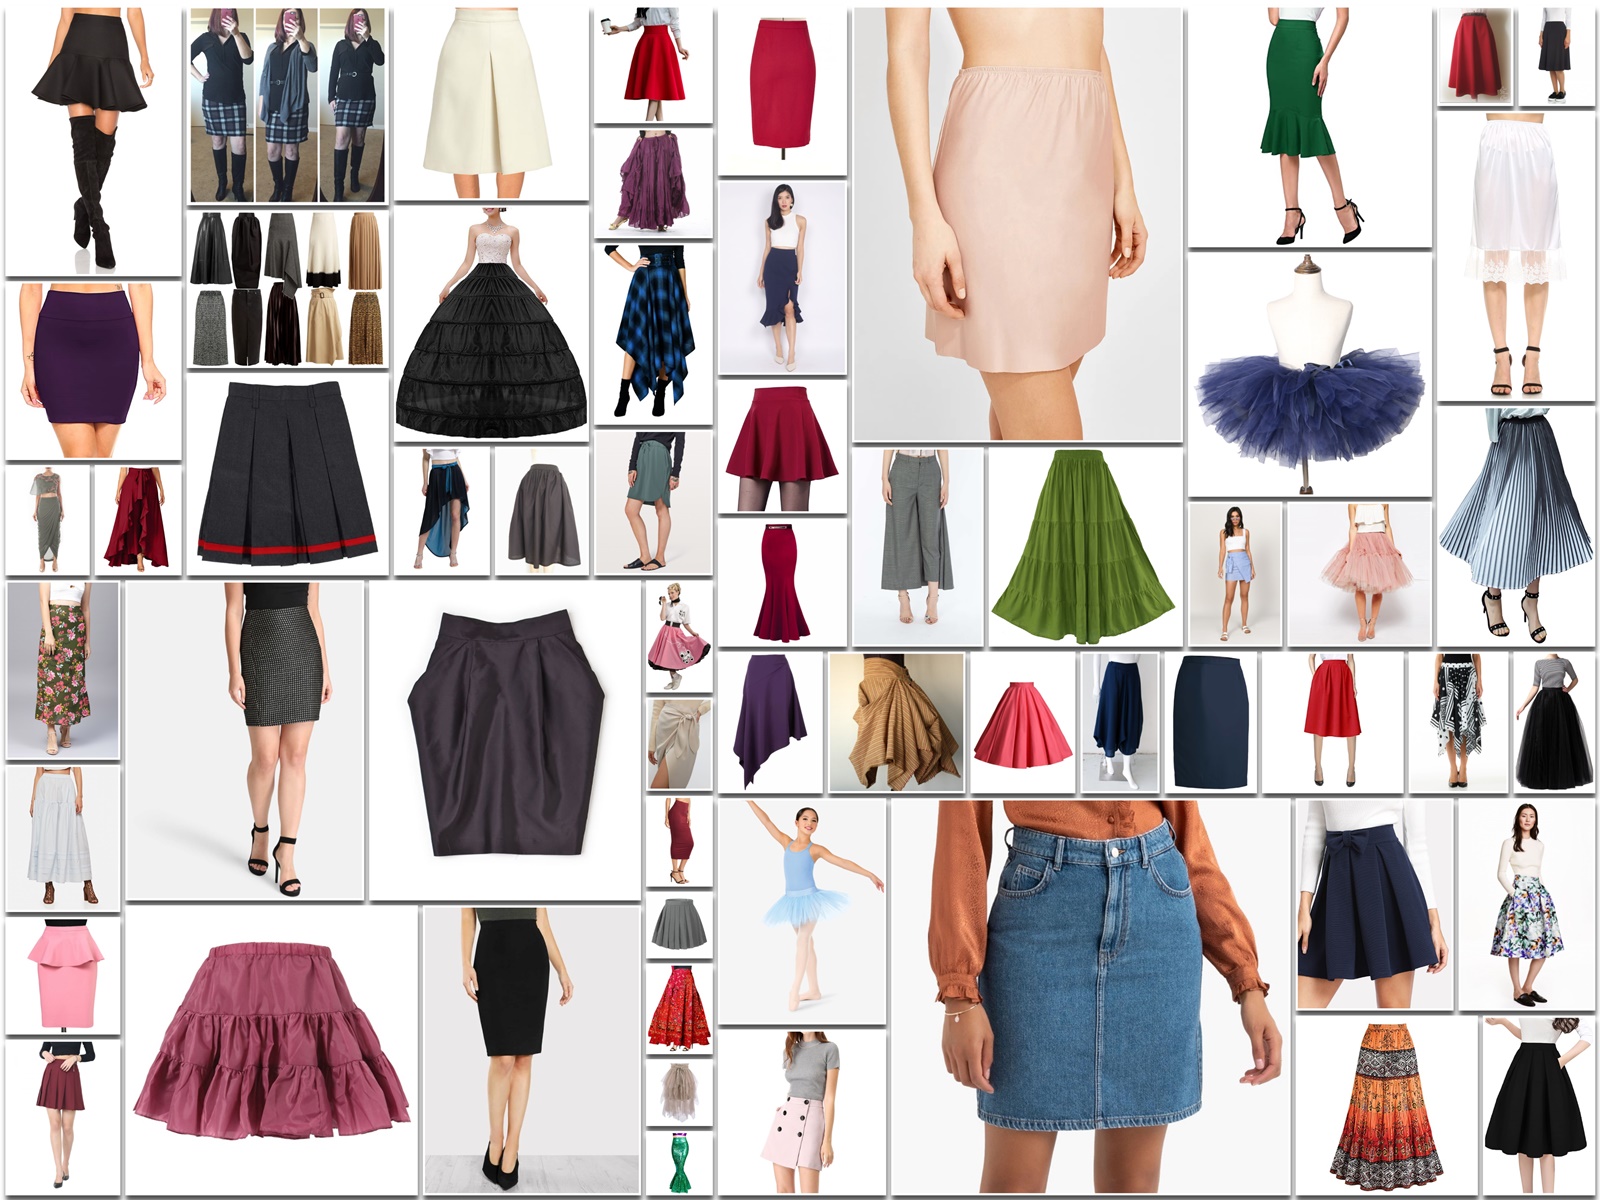 Types of Skirt